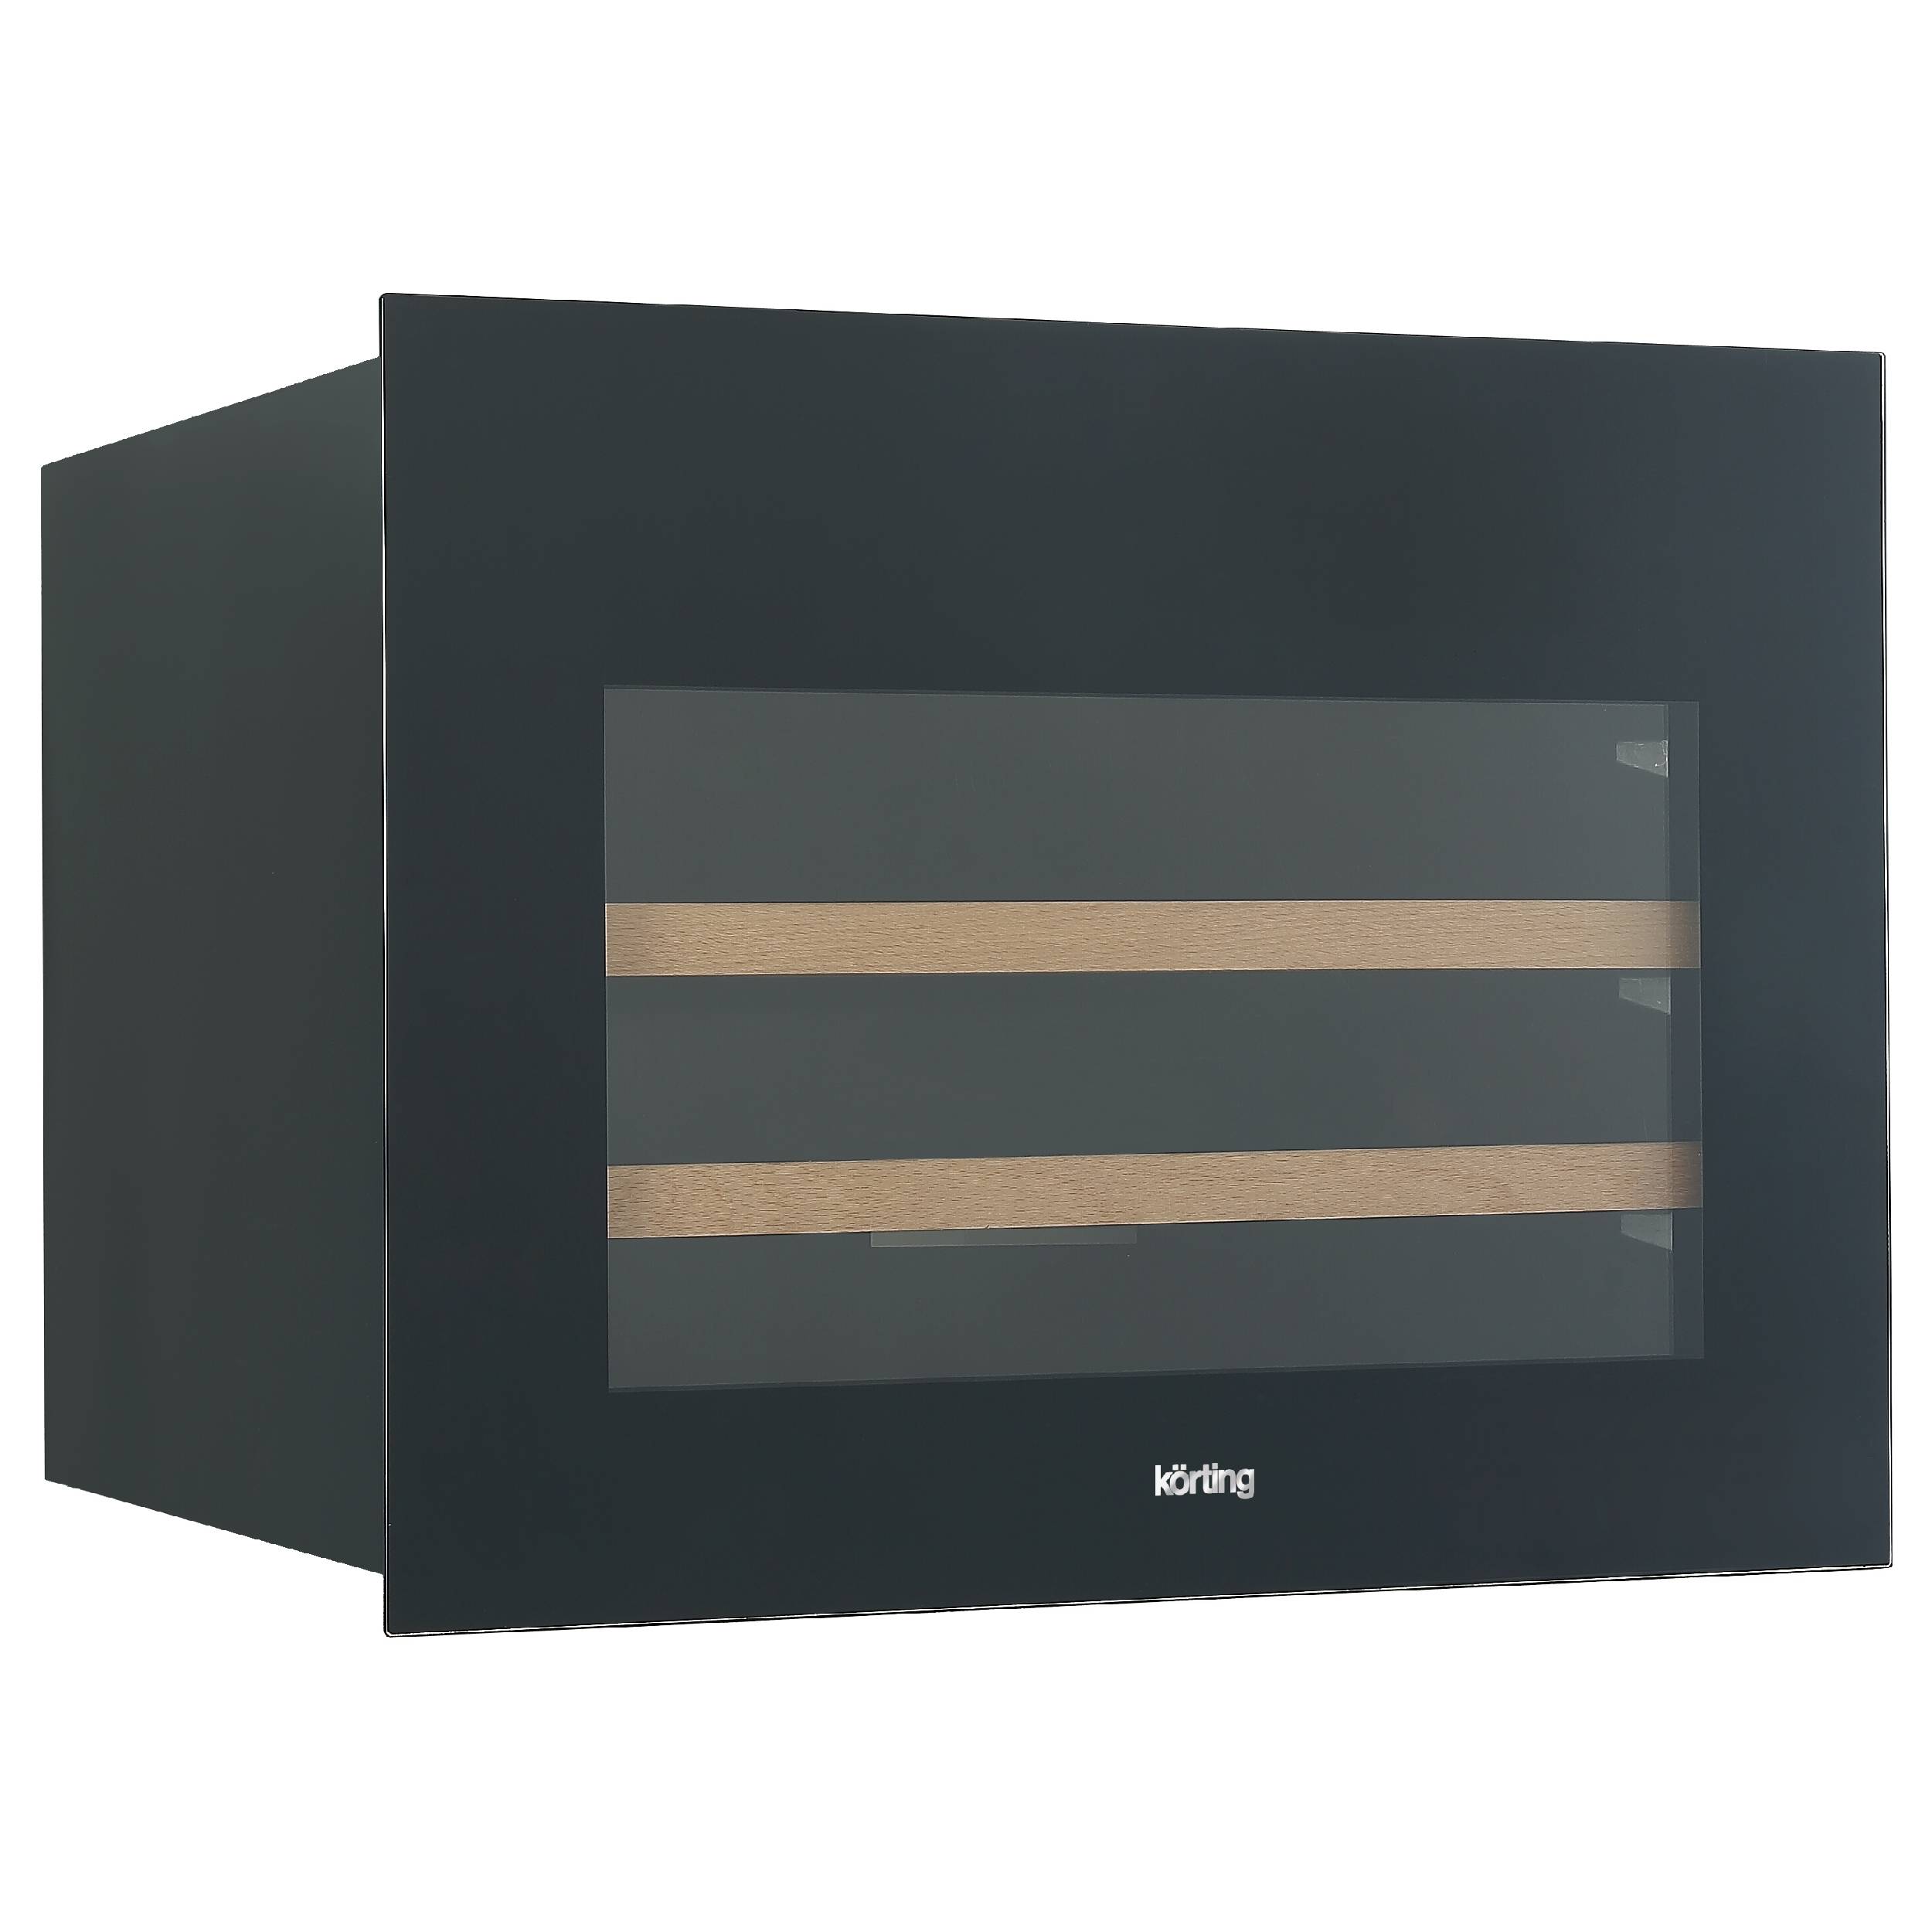 Встраиваемый винный шкаф Korting KFW 501 SL GXN серый, черный винтаж деревянные настенные часы большие потрепанные шикарные деревенские кухни домашний антиквариат